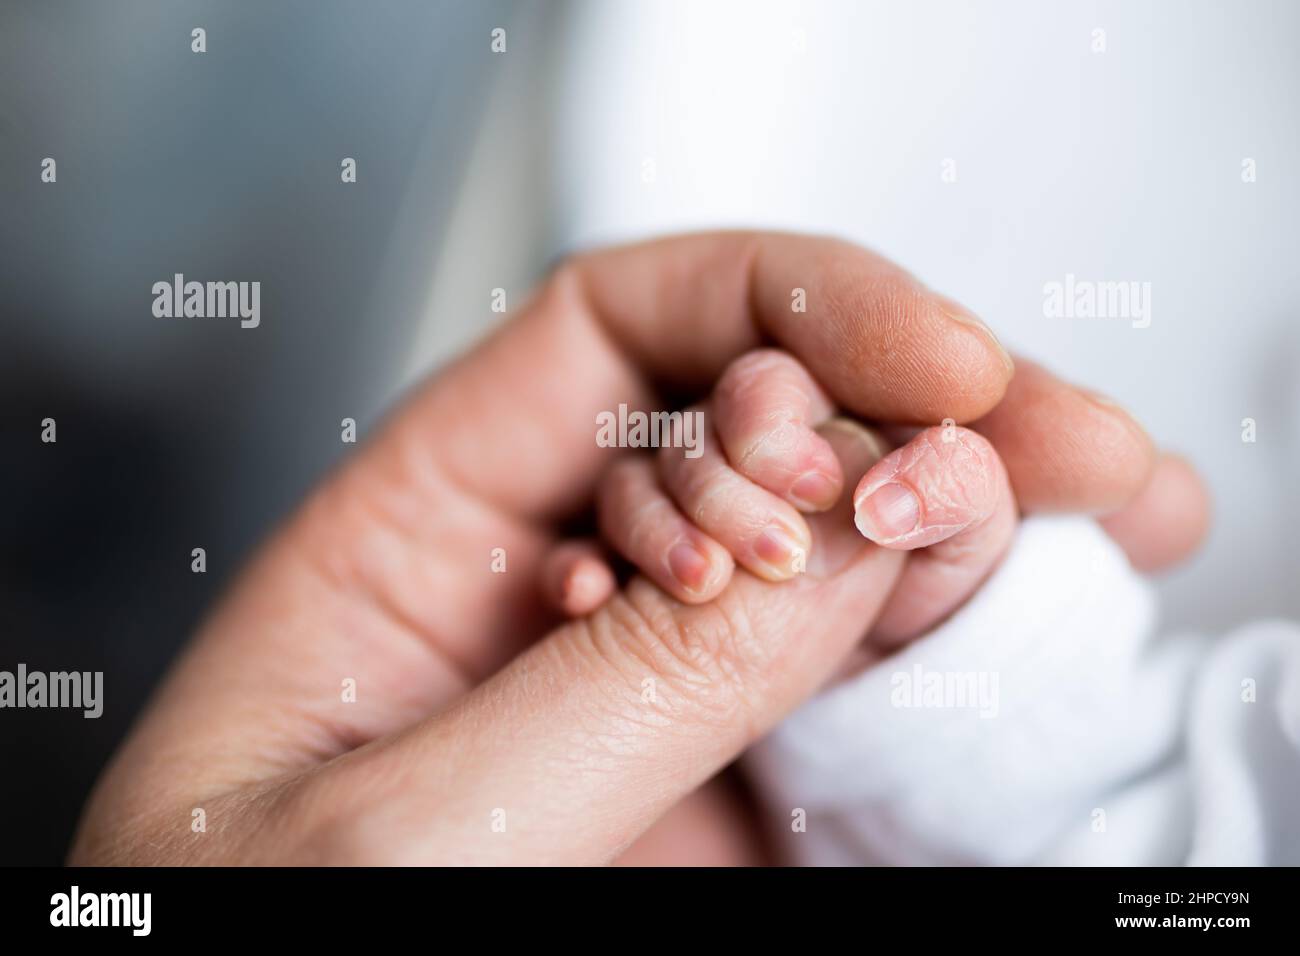 main du nouveau-né qui vient d'être né en tenant le doigt de la main de son père. Banque D'Images